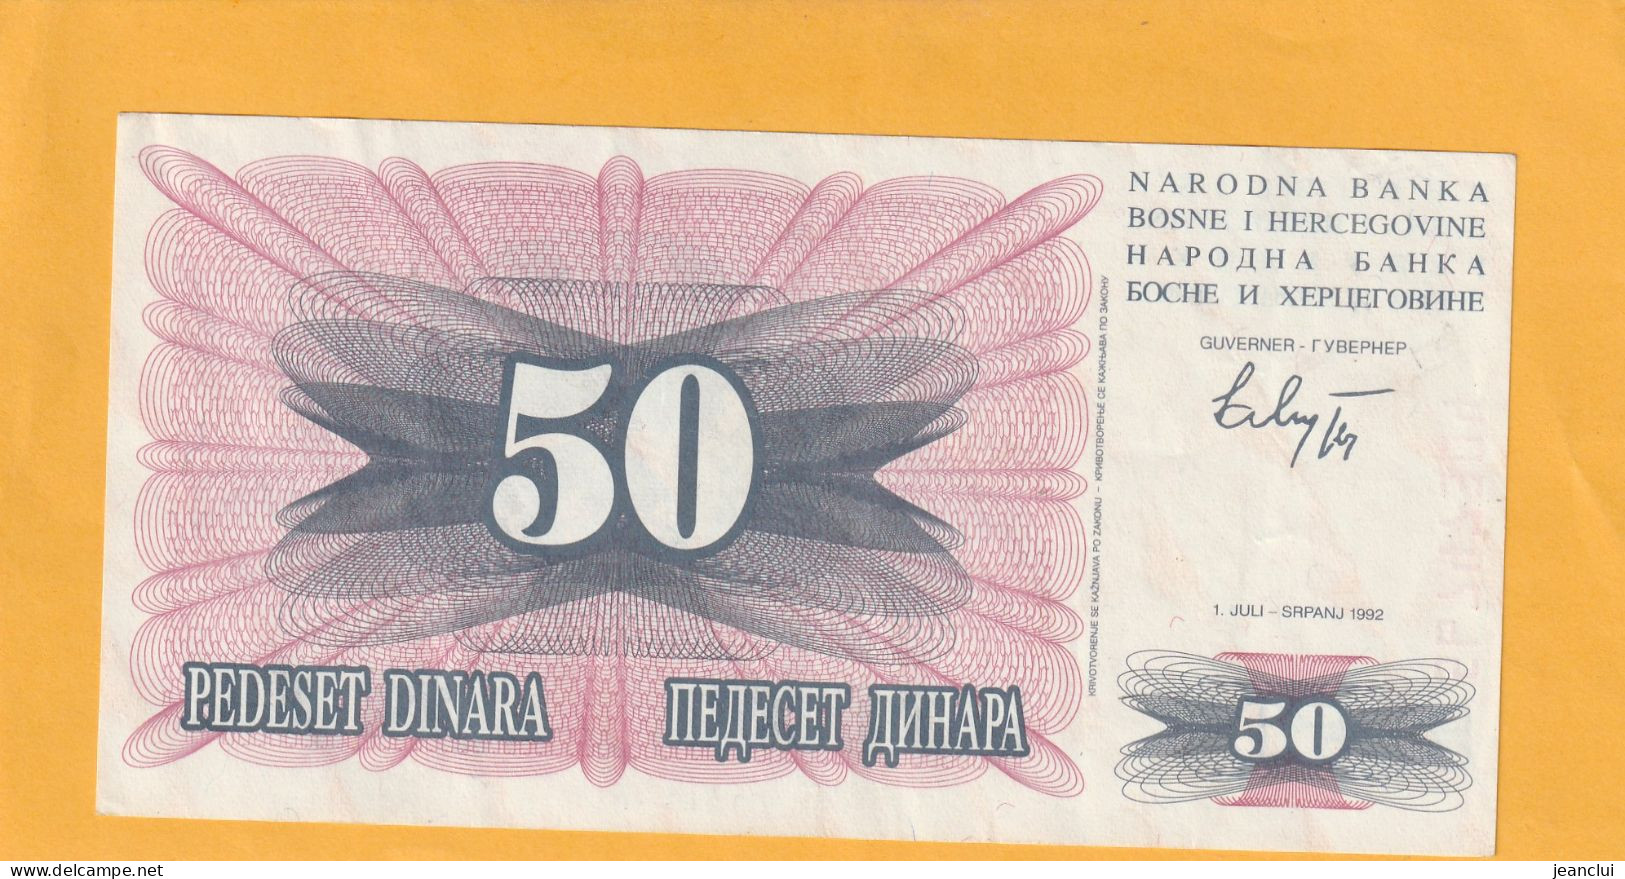 NARODNA BANKA BOSNE I HERCEGOVINE  .  50 DINARA  . 1-7-1992  .  N°  56 74 7304  .  2 SCANNES  .  BILLET EN TRES BEL ETAT - Bosnië En Herzegovina